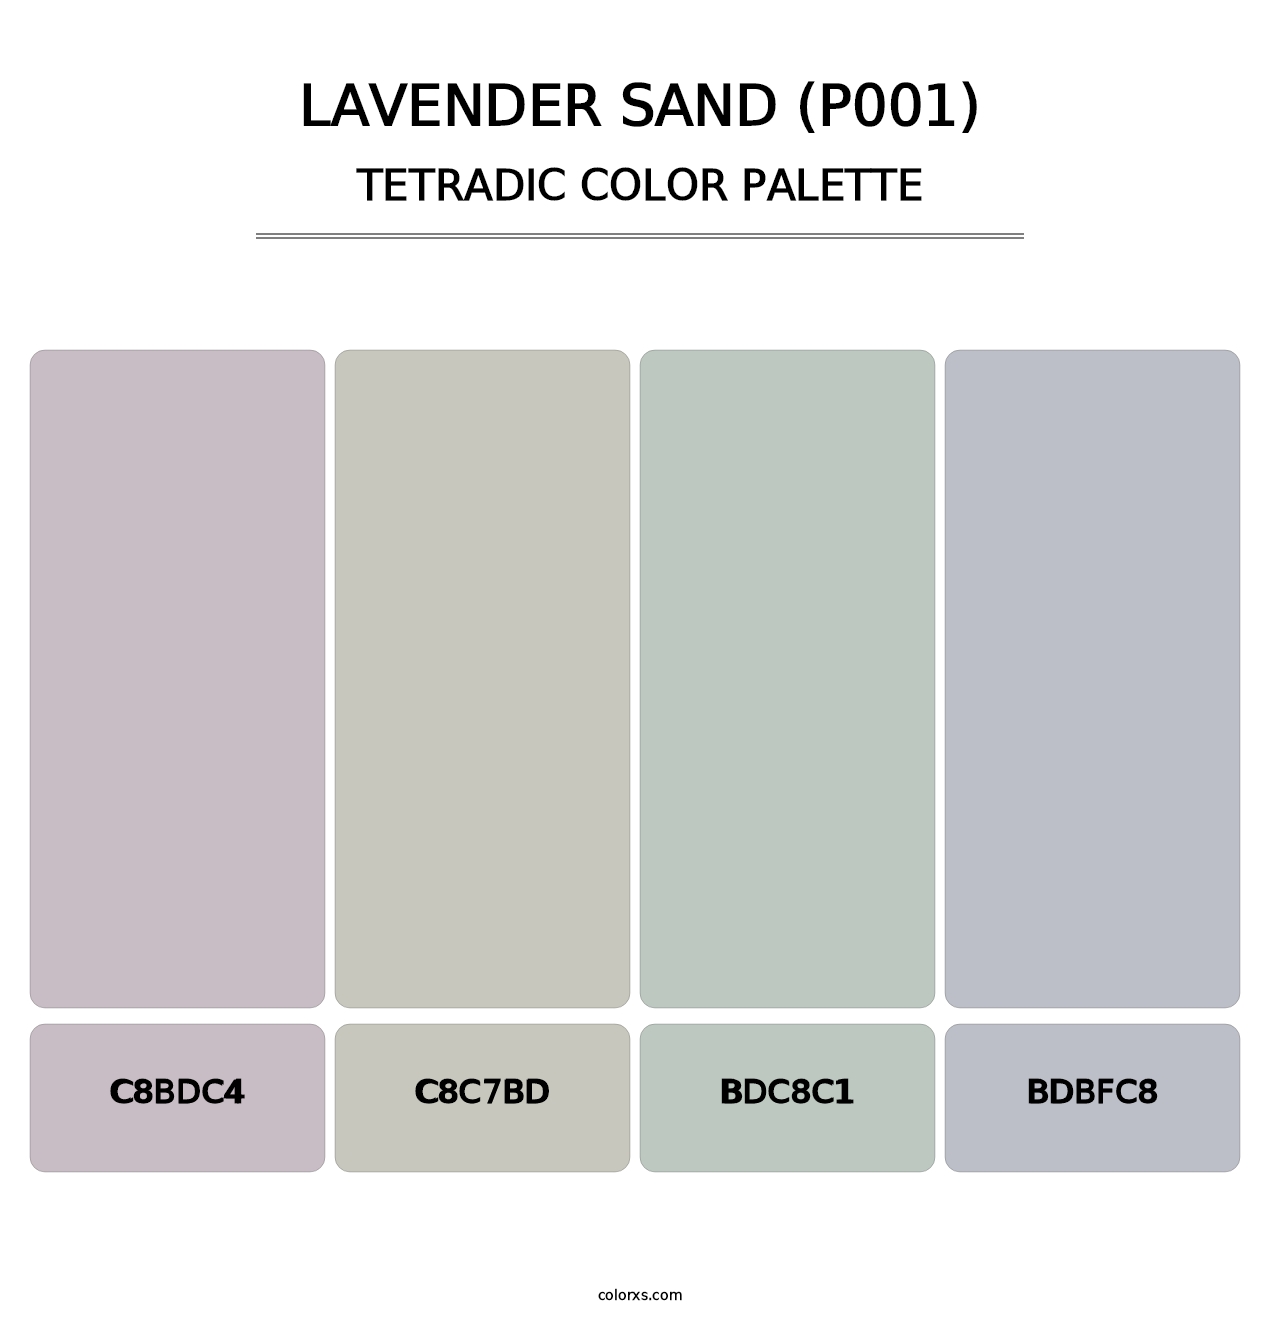 Lavender Sand (P001) - Tetradic Color Palette